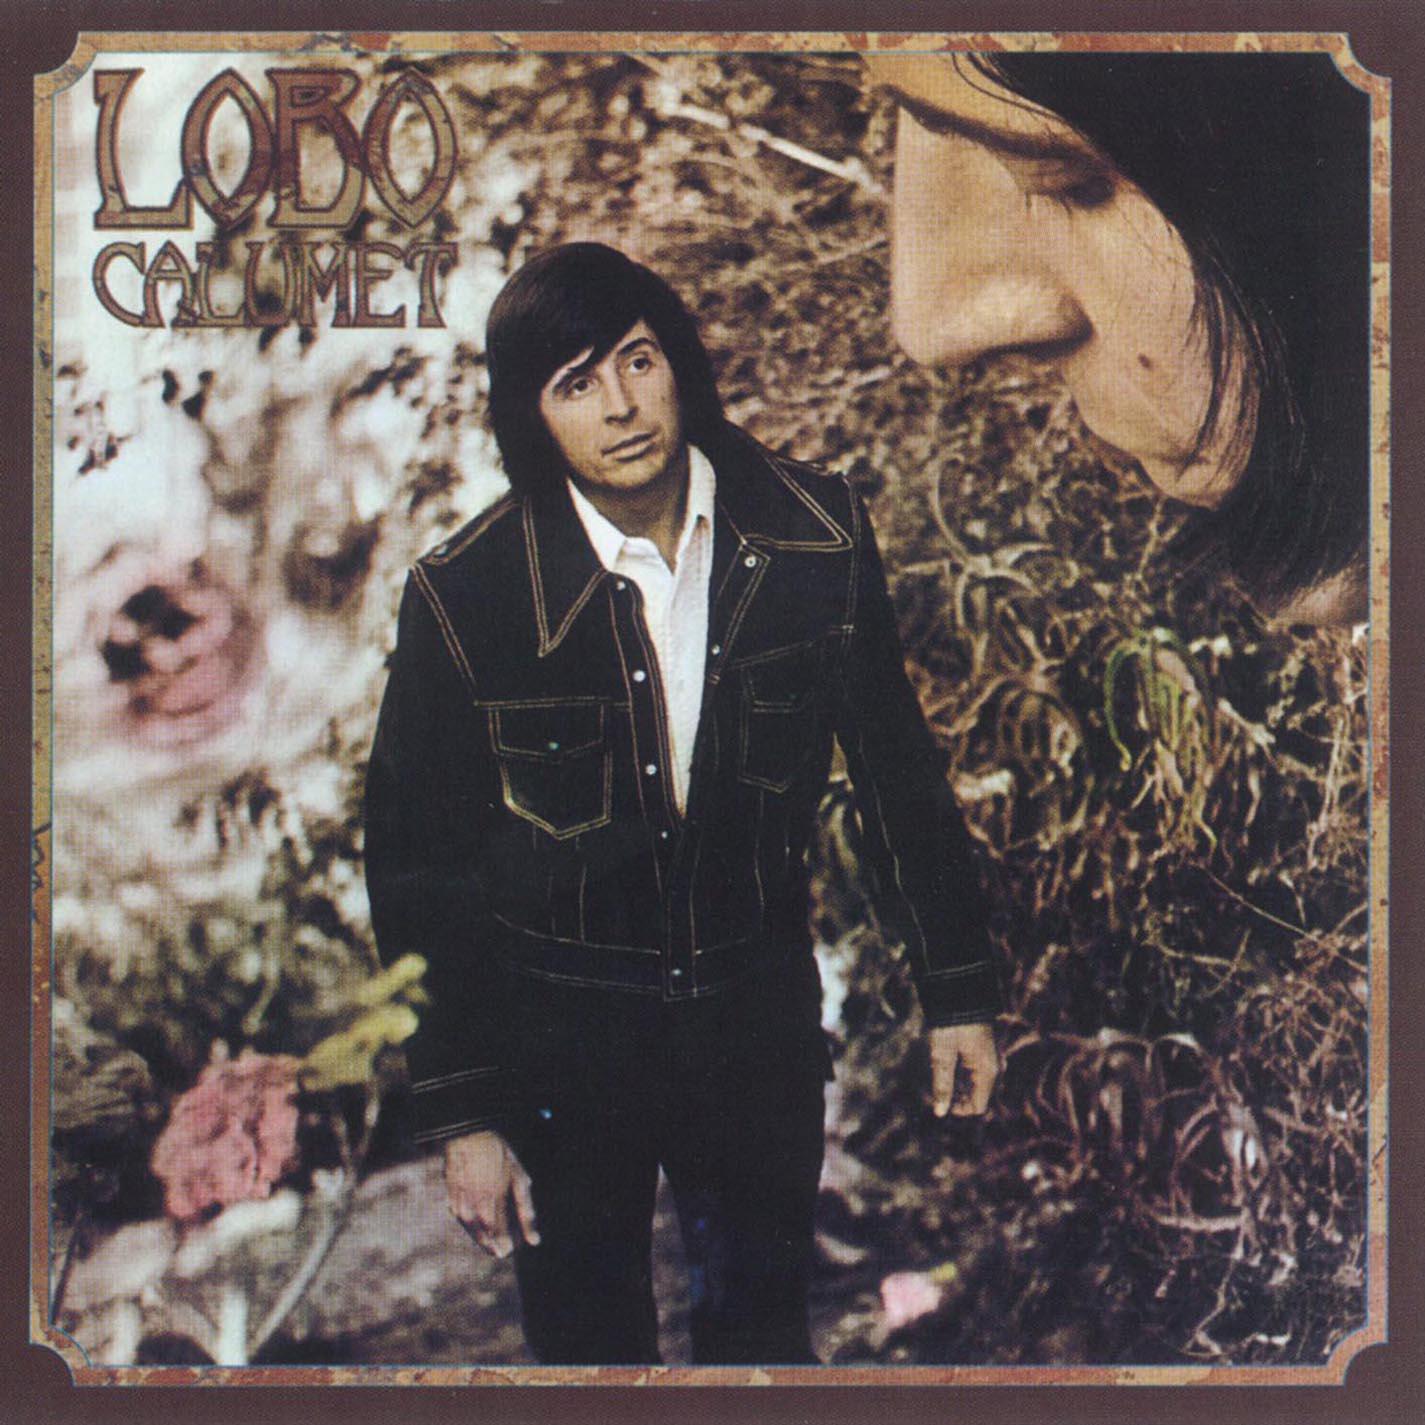 Stoney歌词 歌手Lobo-专辑Calumet-单曲《Stoney》LRC歌词下载